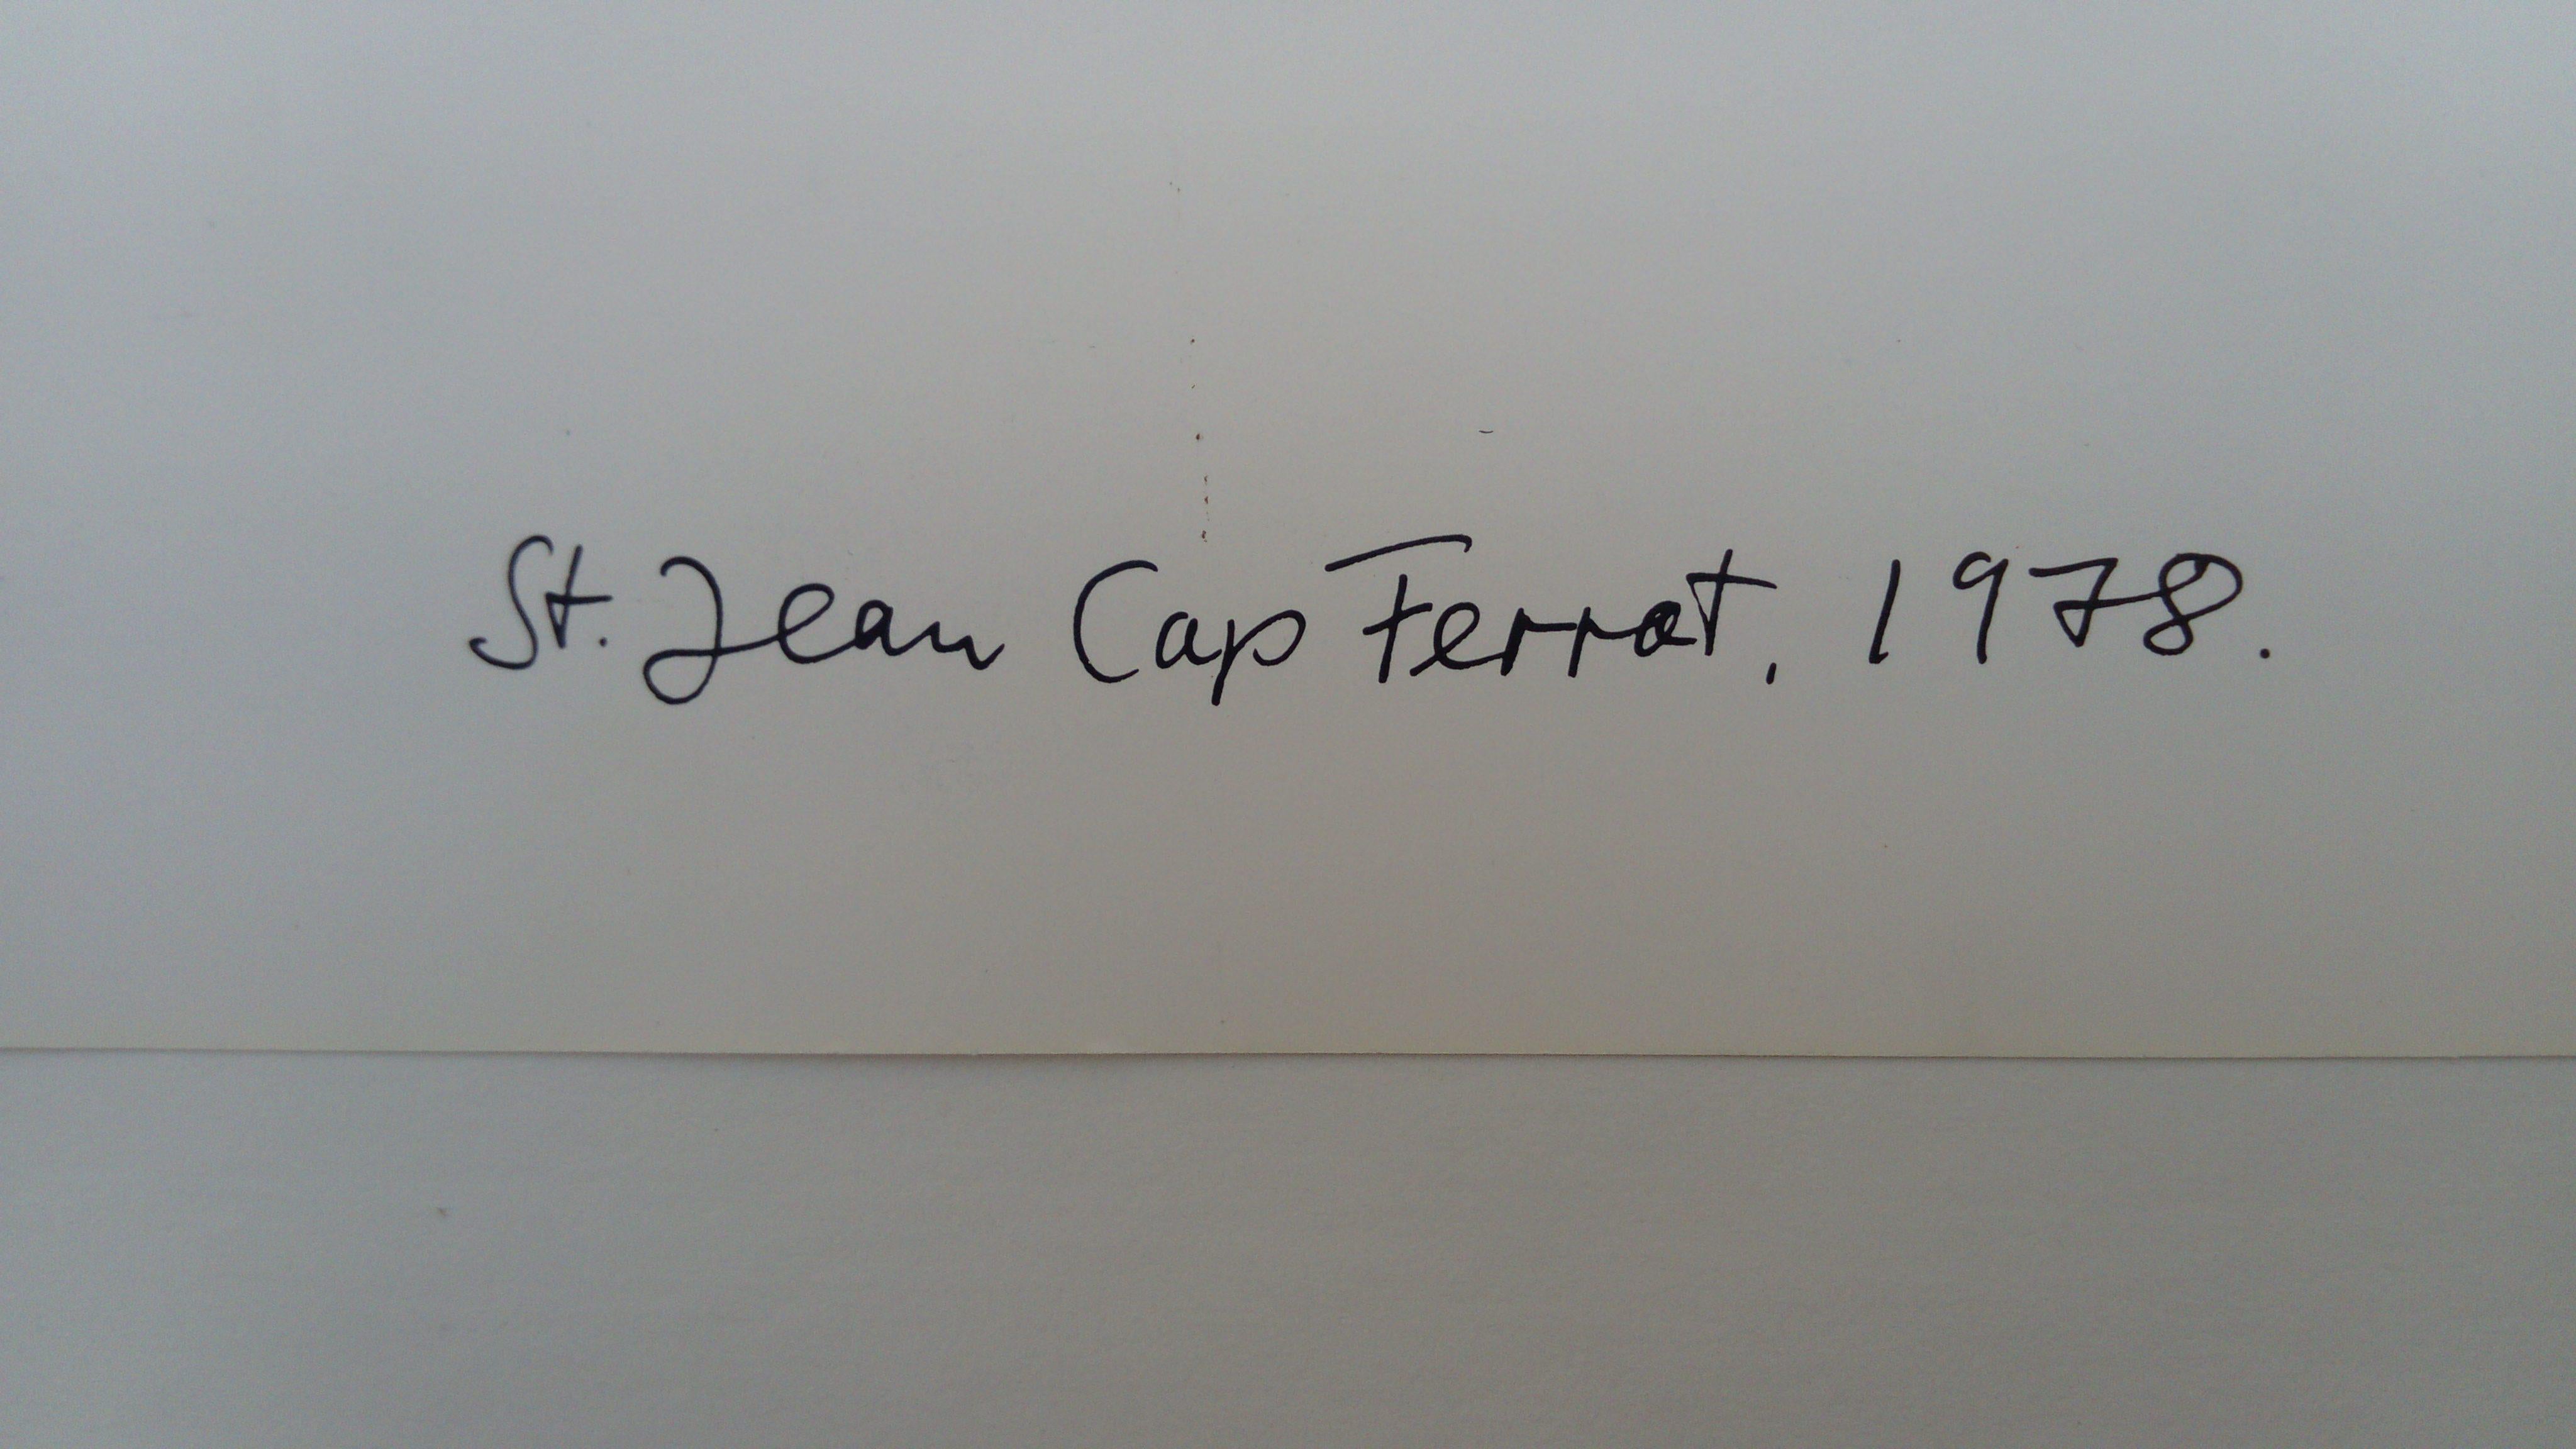 Saint Jean Cap Ferrat - Black Black and White Photograph by Helmut Newton